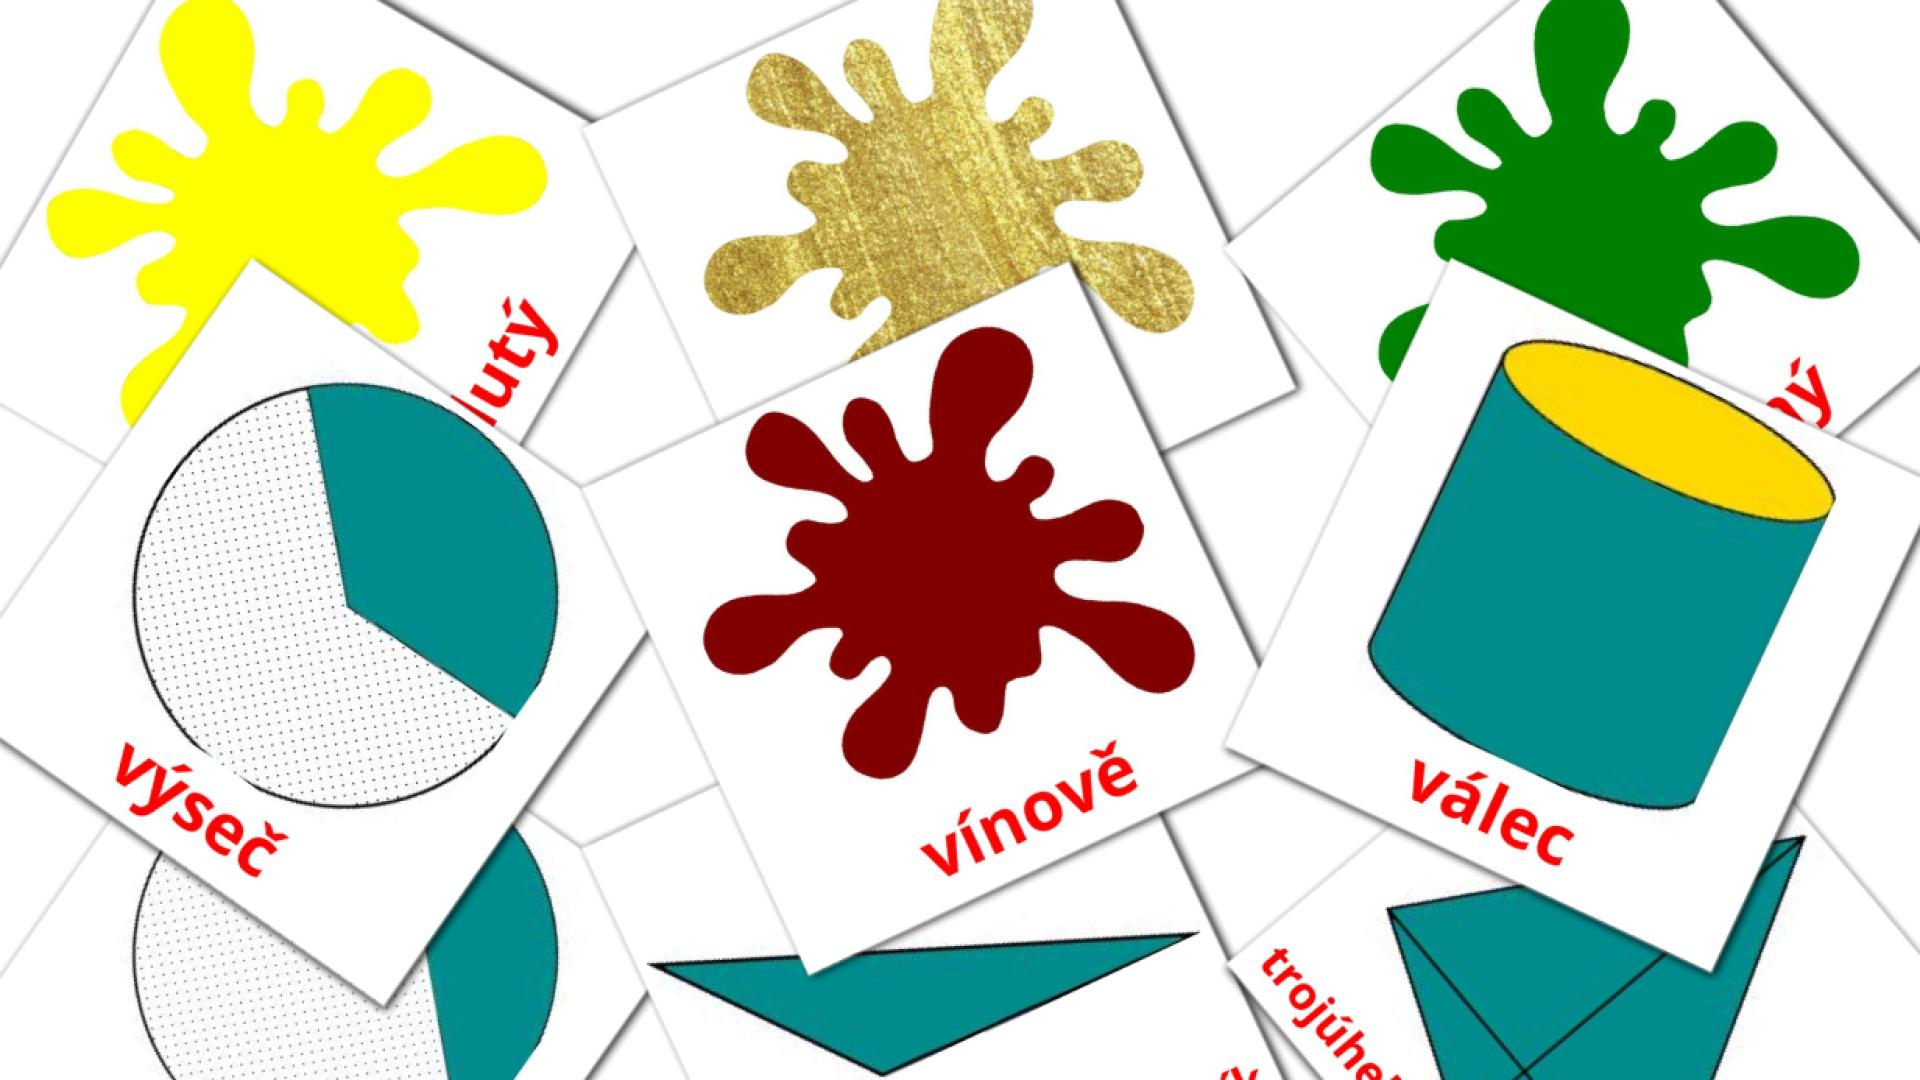 Tschechisch Barva a formae Vokabelkarteikarten